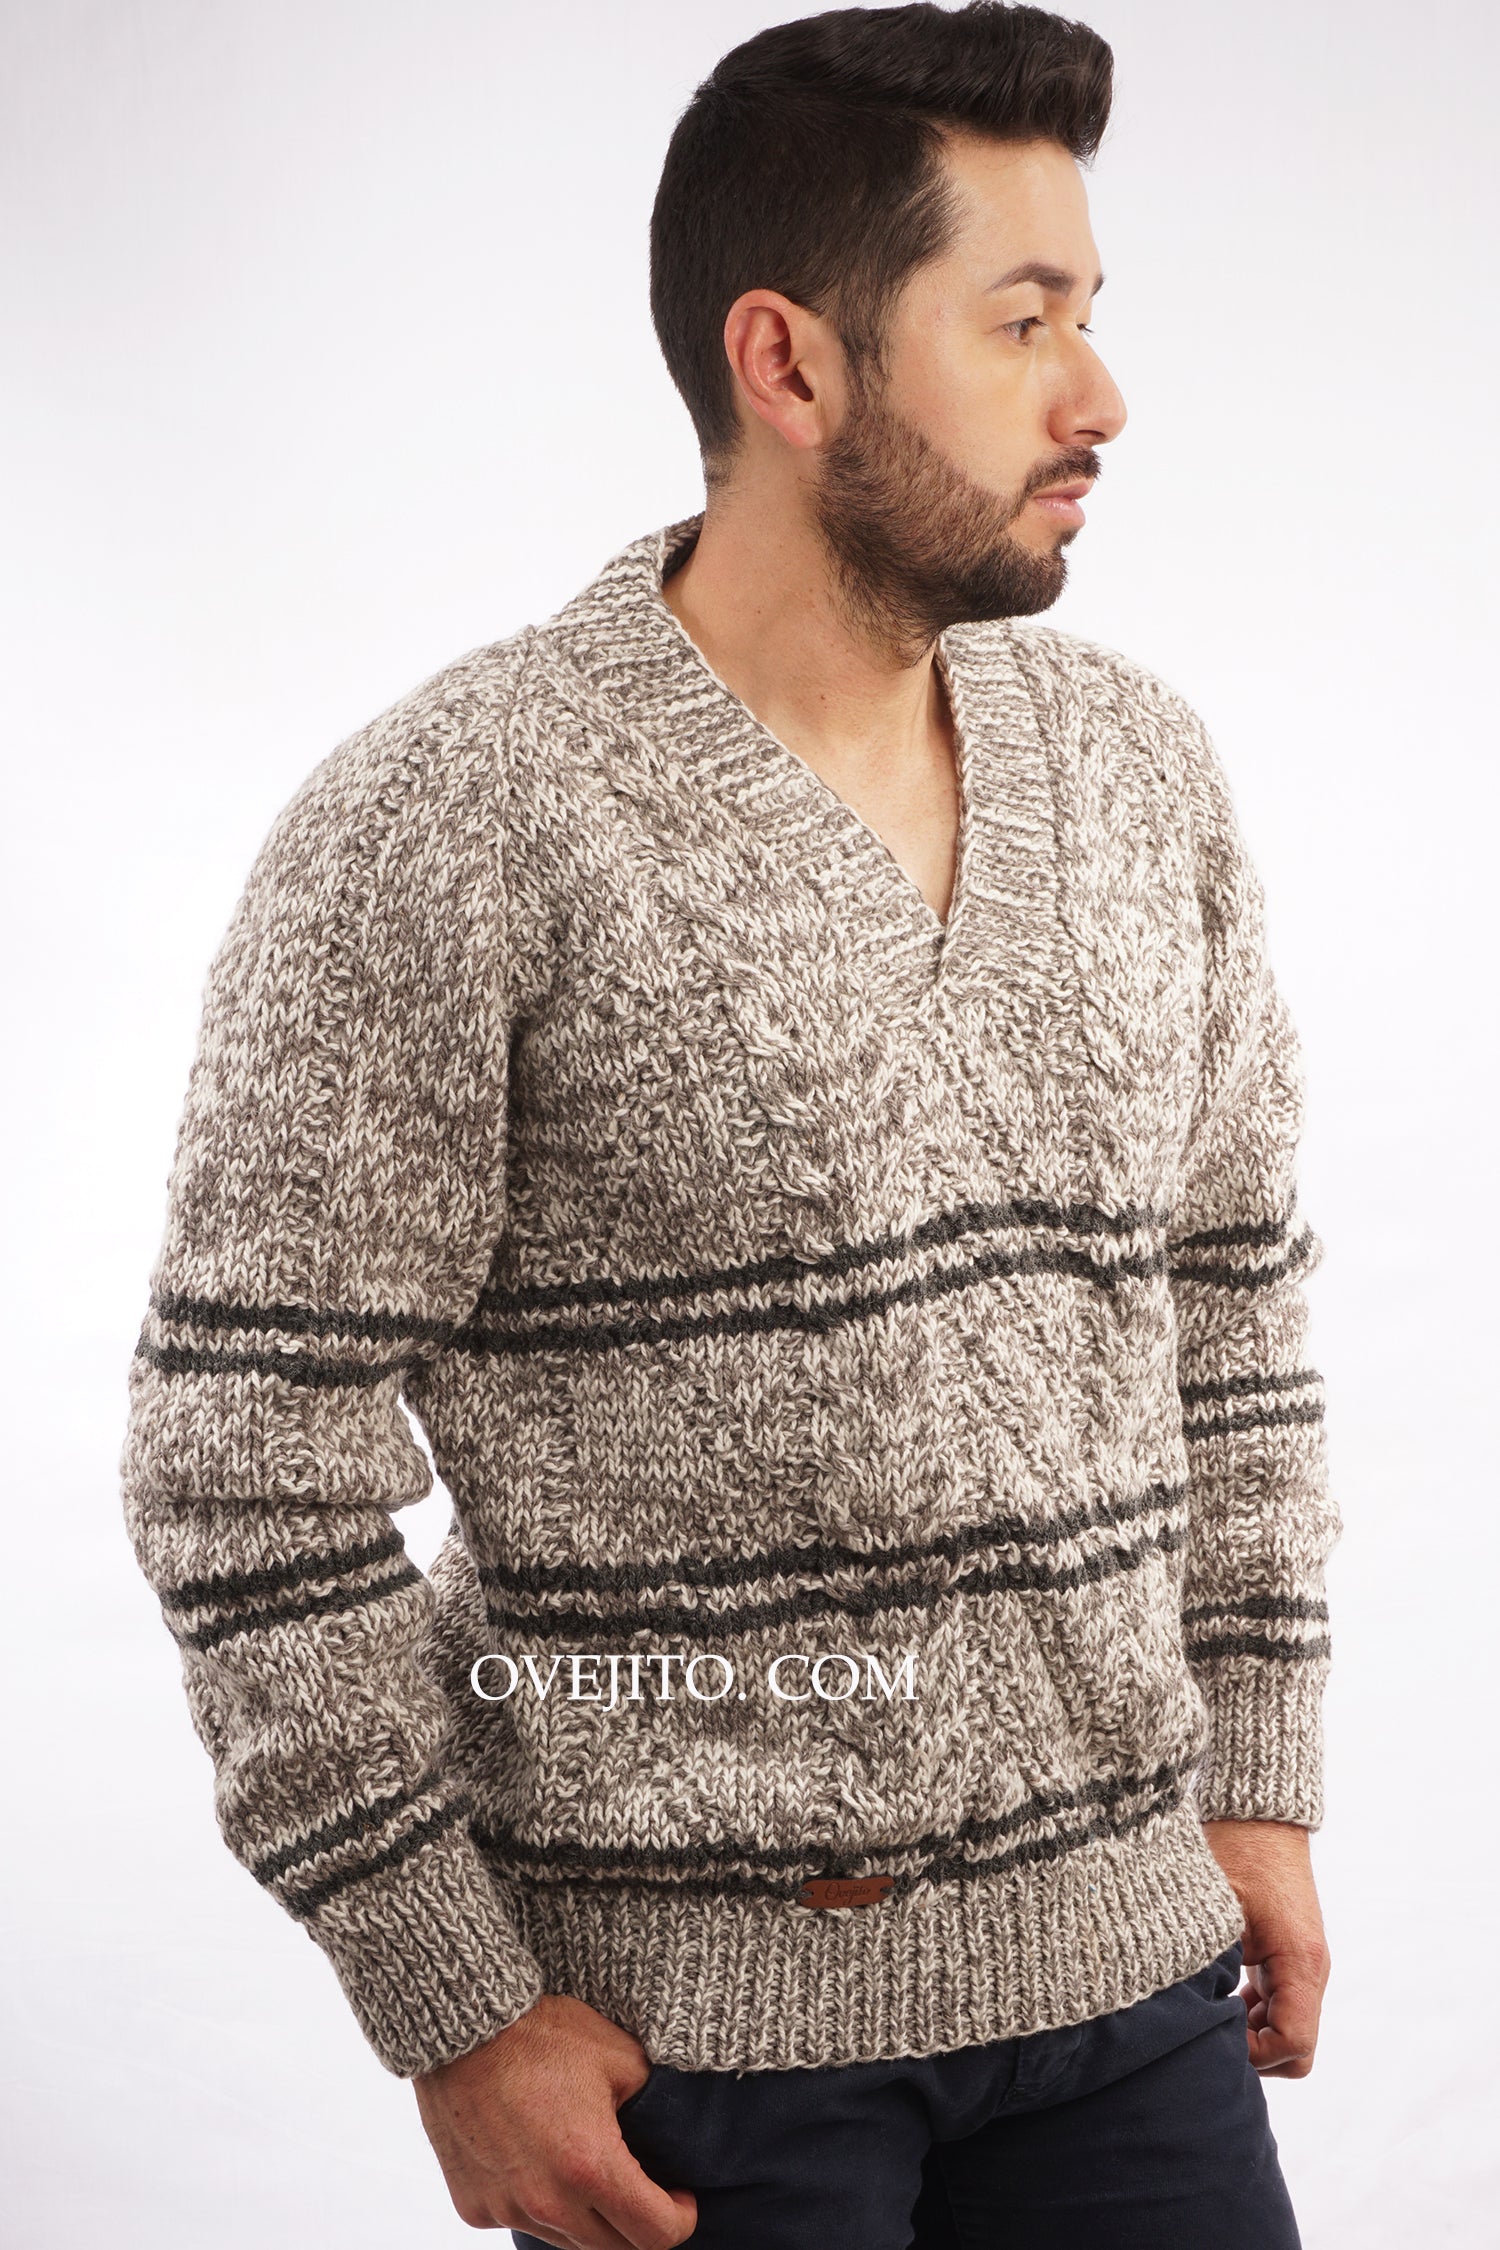 Sweater Hombre Cuello V Pullover Fino/textura Suave